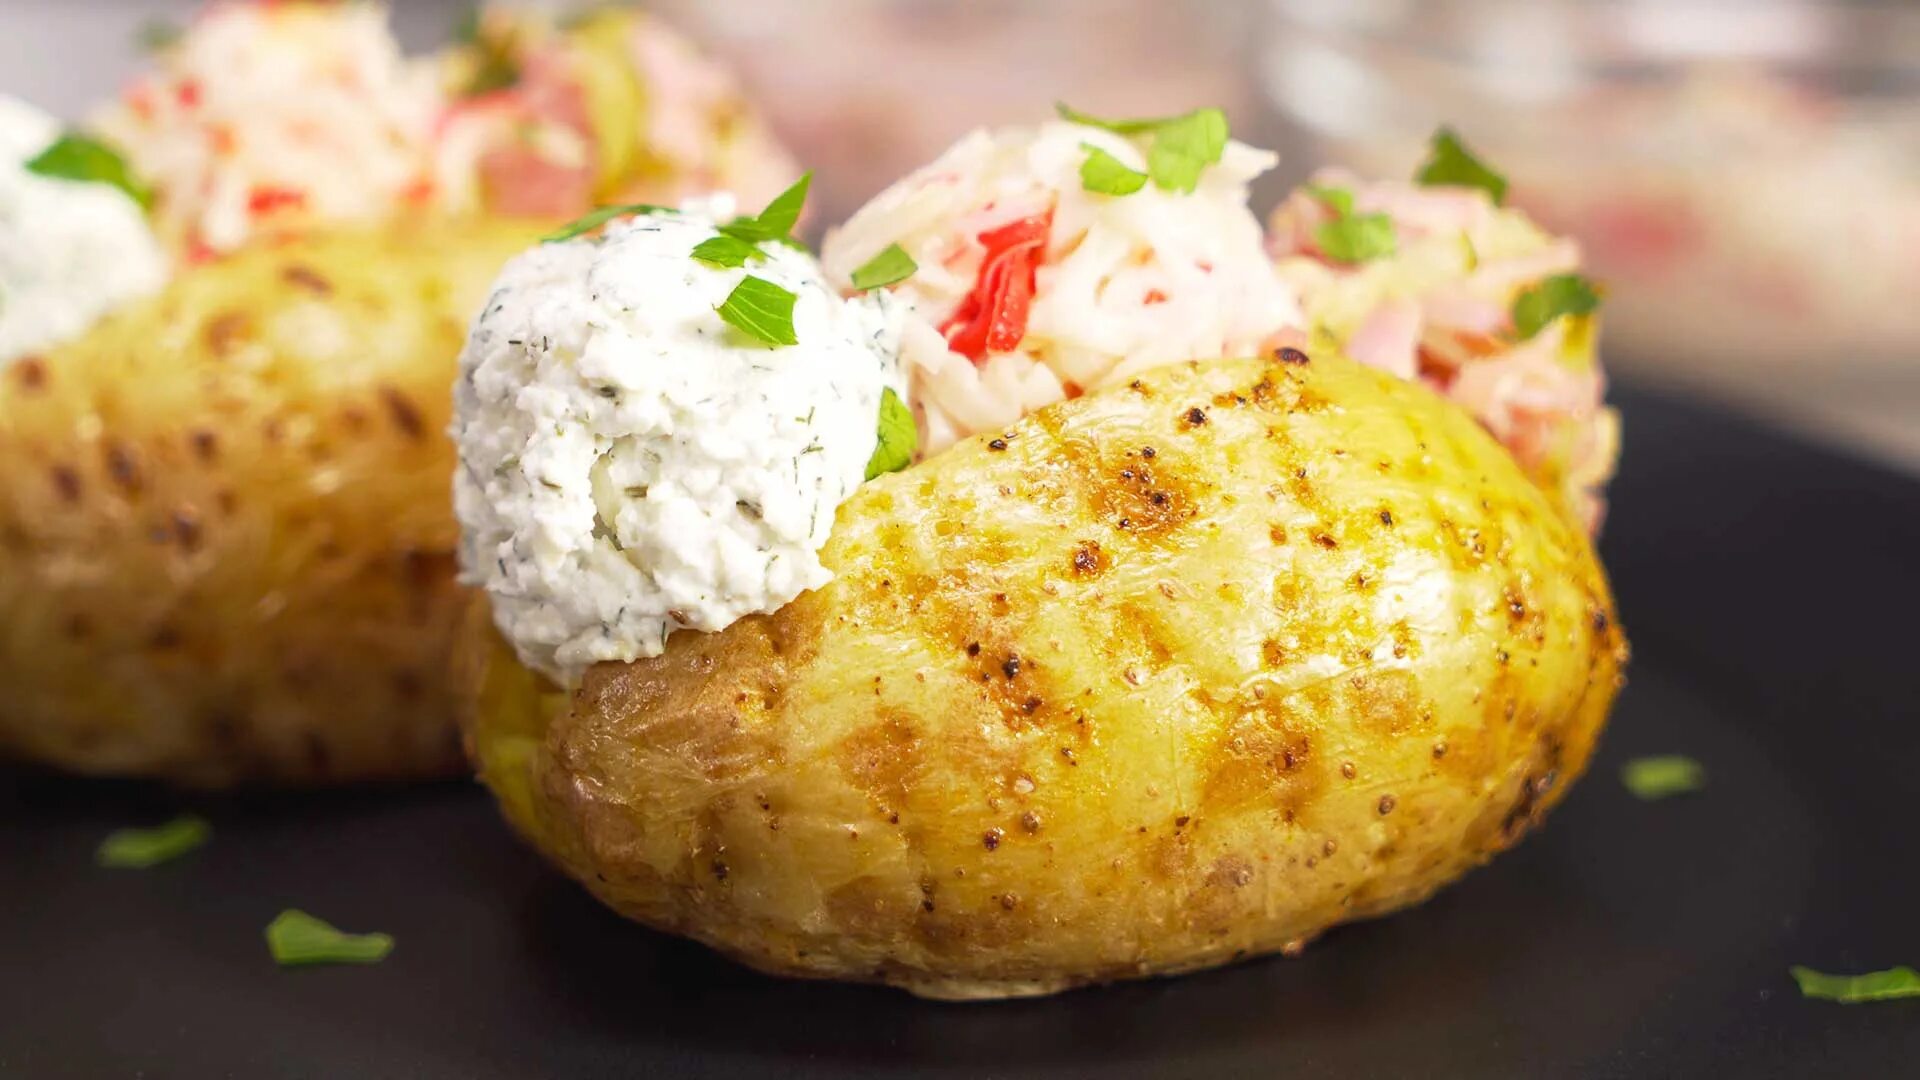 Крошка картошка где. Печеный картофель крошка-картошка. Картофель запеченный крошка картошка. Картошка из крошки картошки. Крошка-картошка (запеченная в духовке).